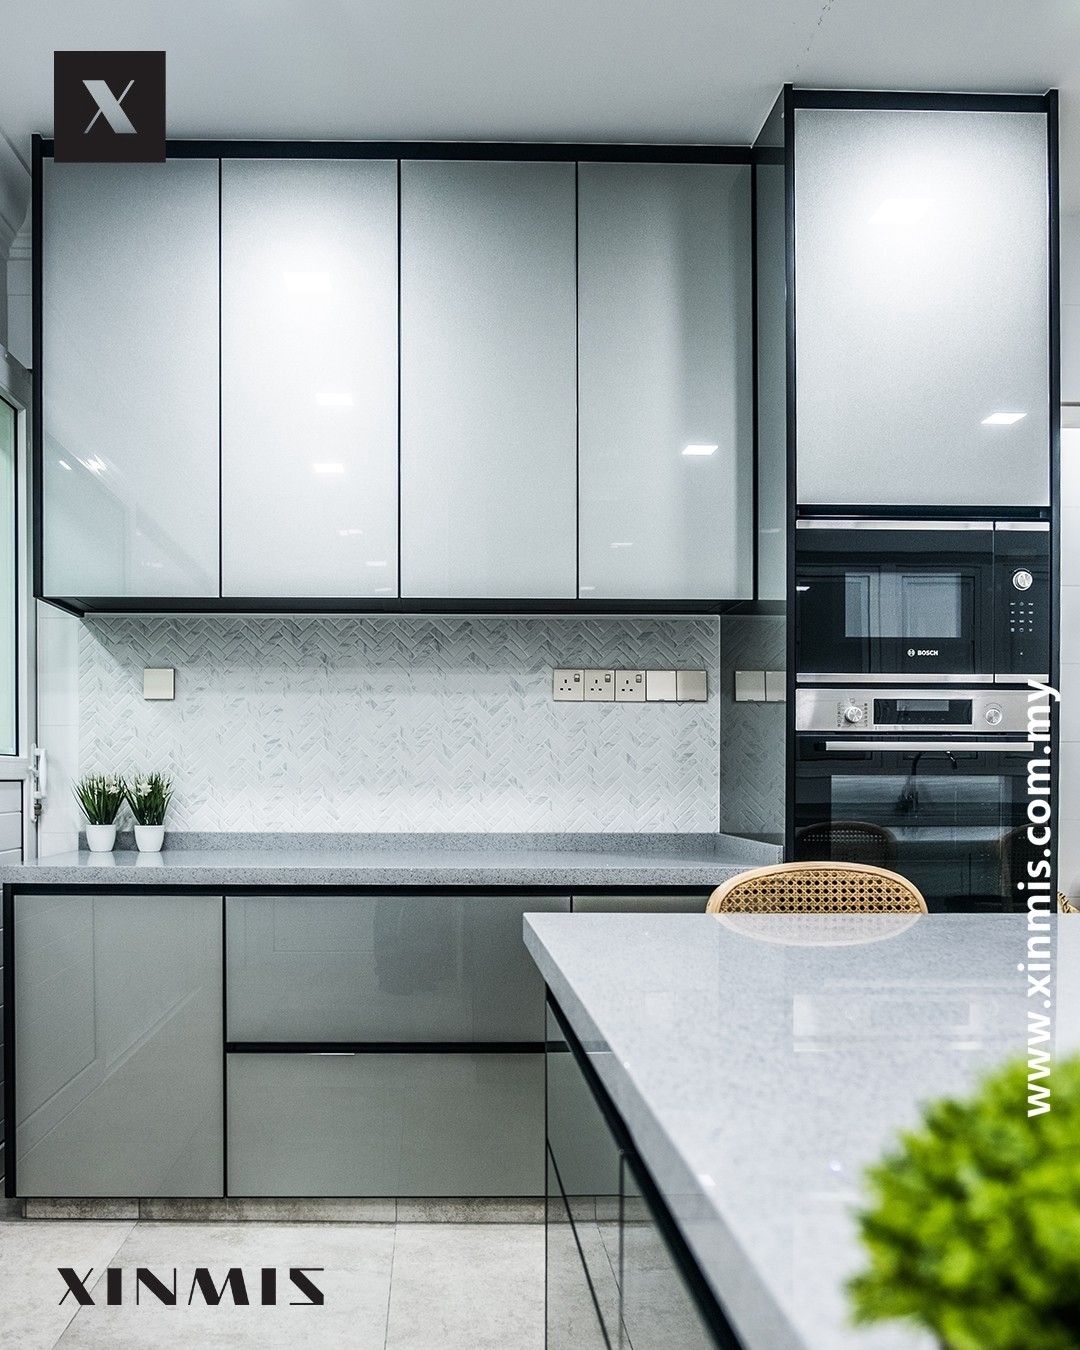 Modern Elegant Kitchen Cabinet Design - Selangor Modern Kitchen Cabinet Kitchen Malaysia Reference Renovation Design 